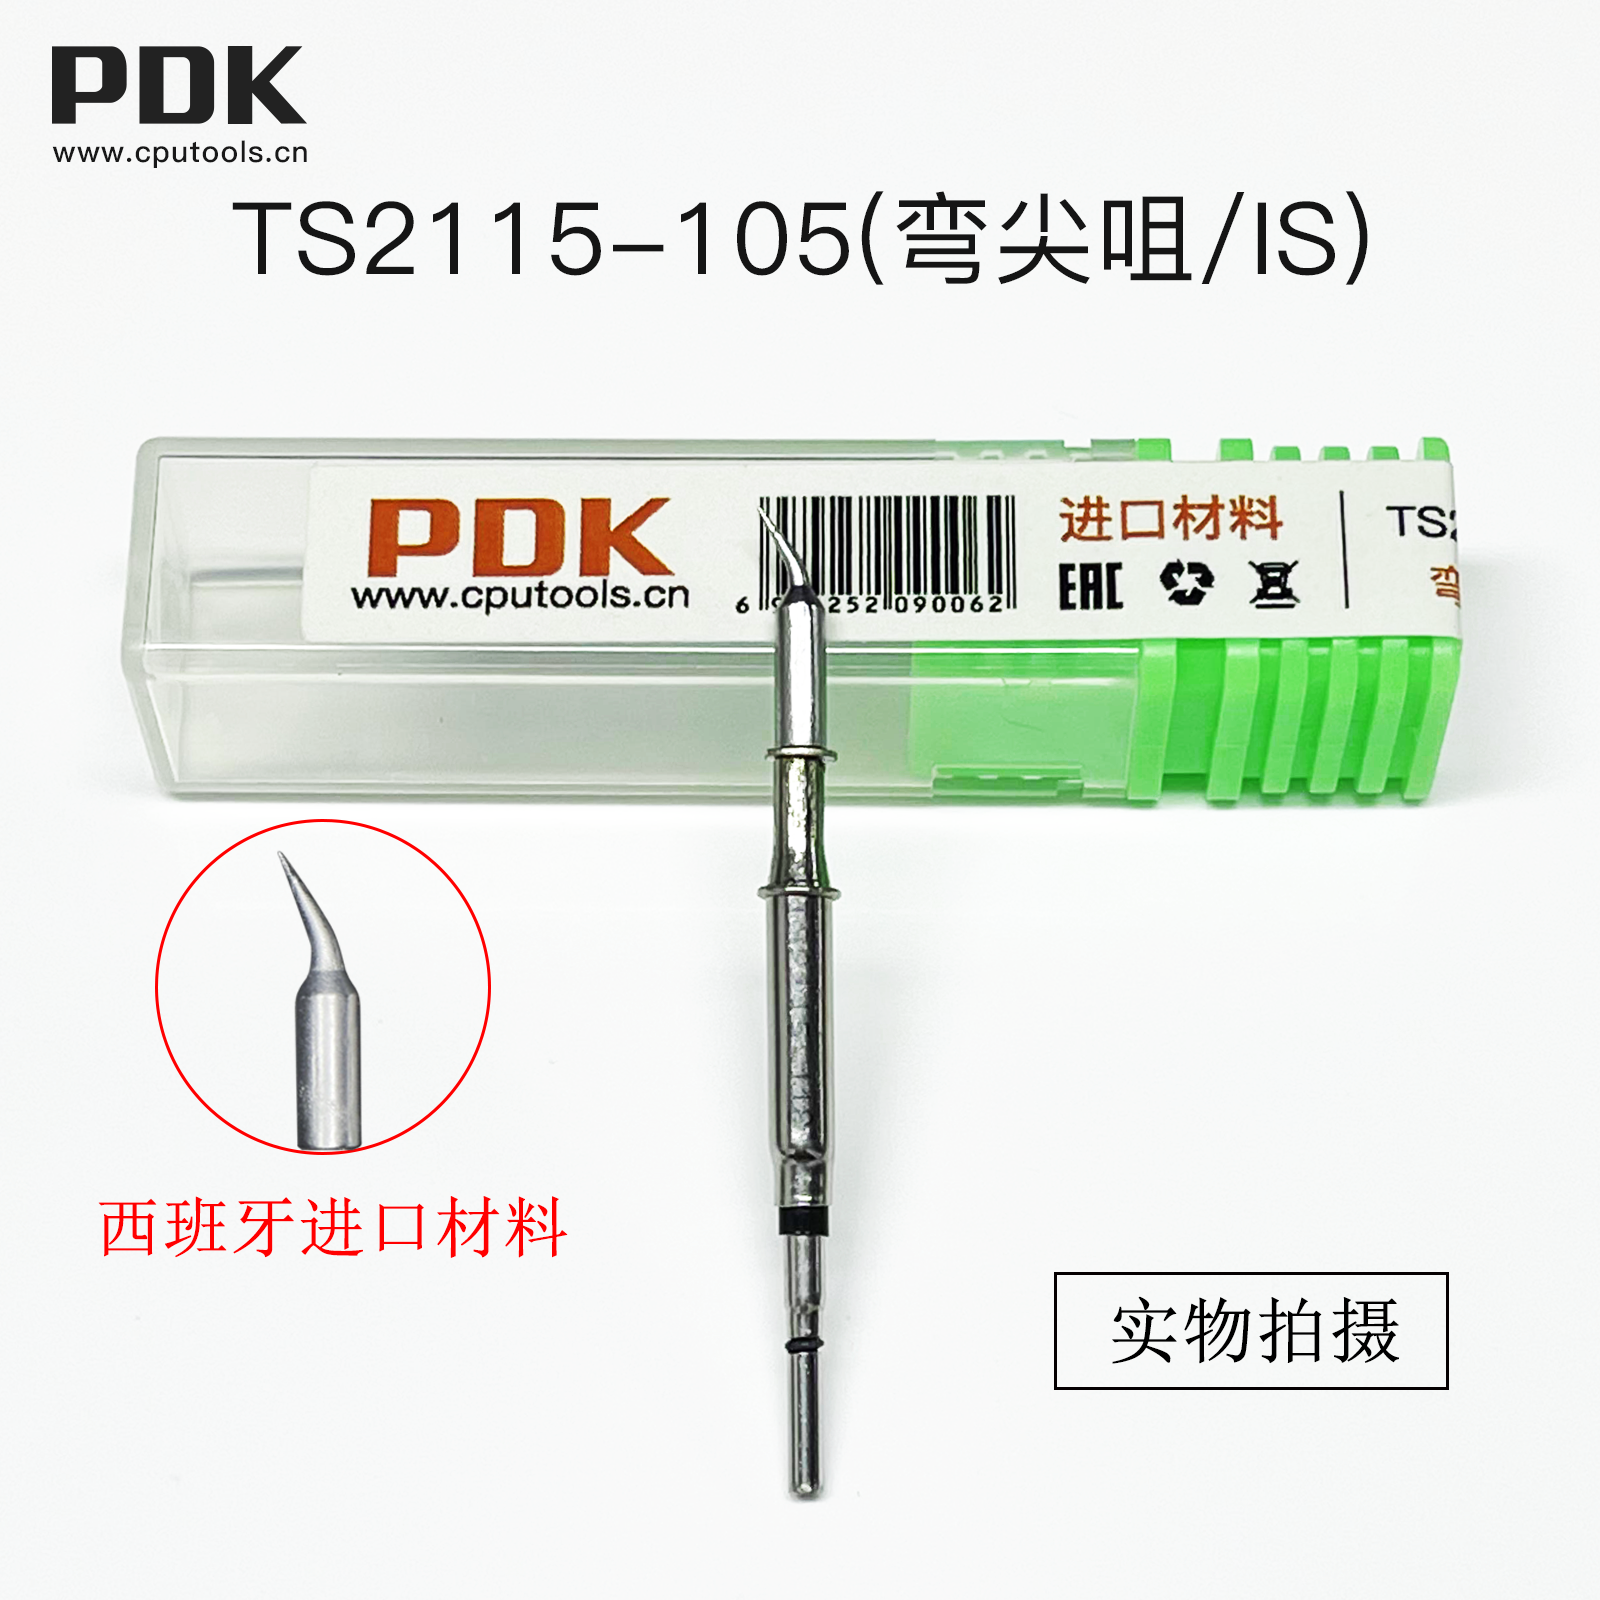 PDK TS2115进口材料烙铁头(图5)